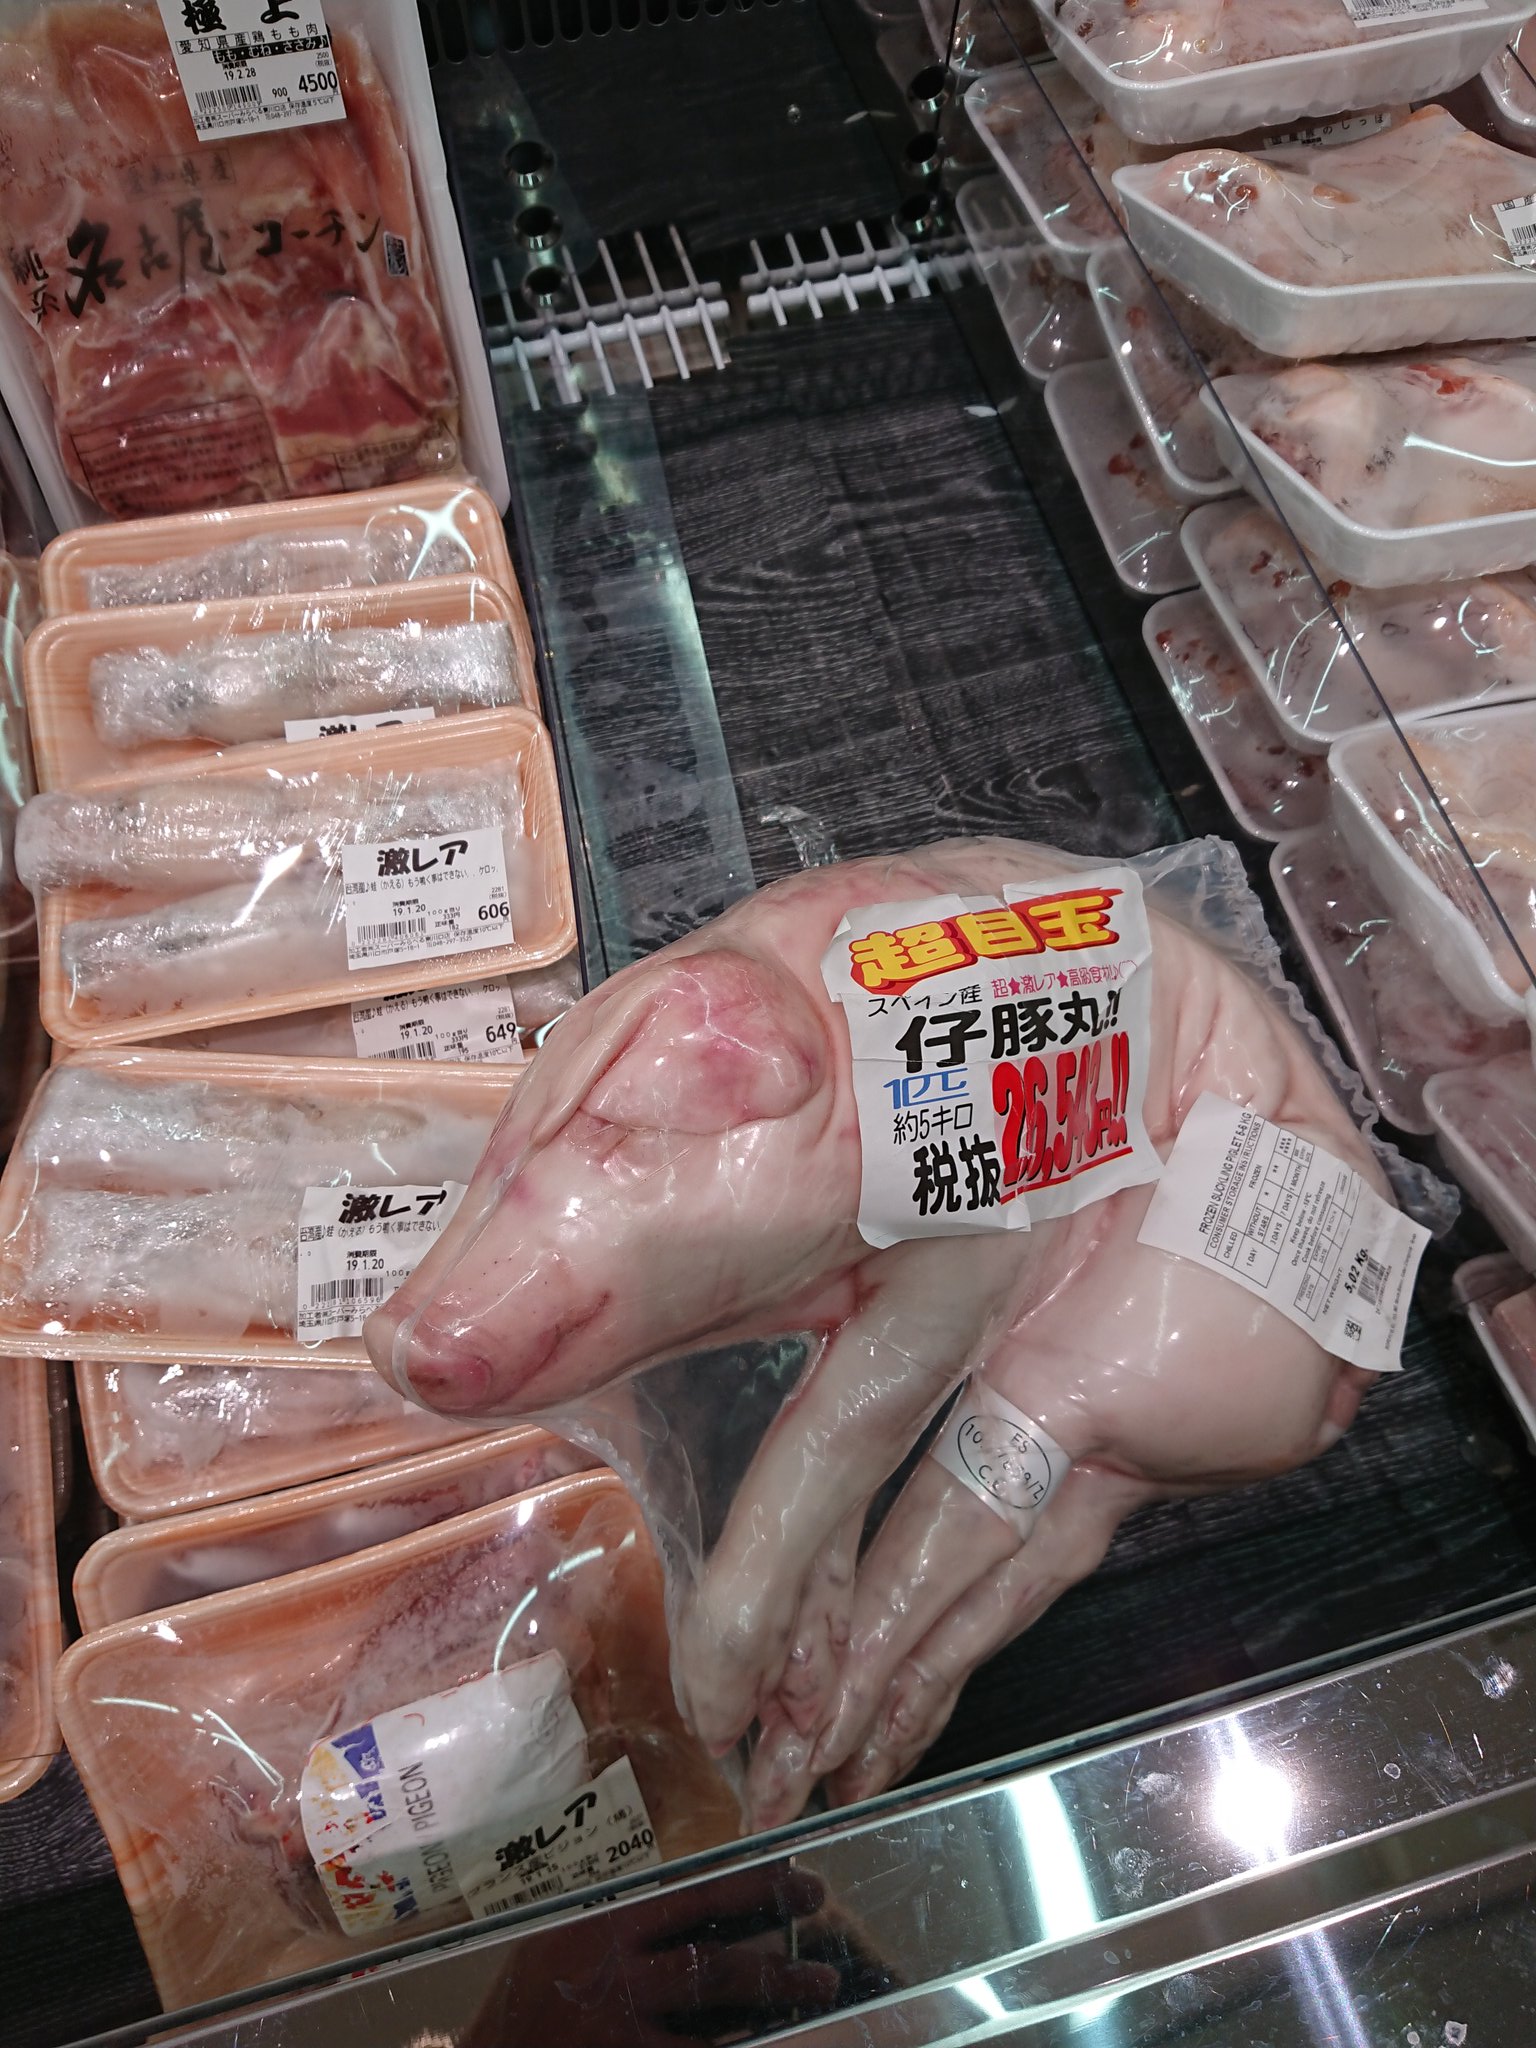 豚の丸焼き用のお肉だけど この形状で売られているとさすがに気が引ける 話題の画像プラス